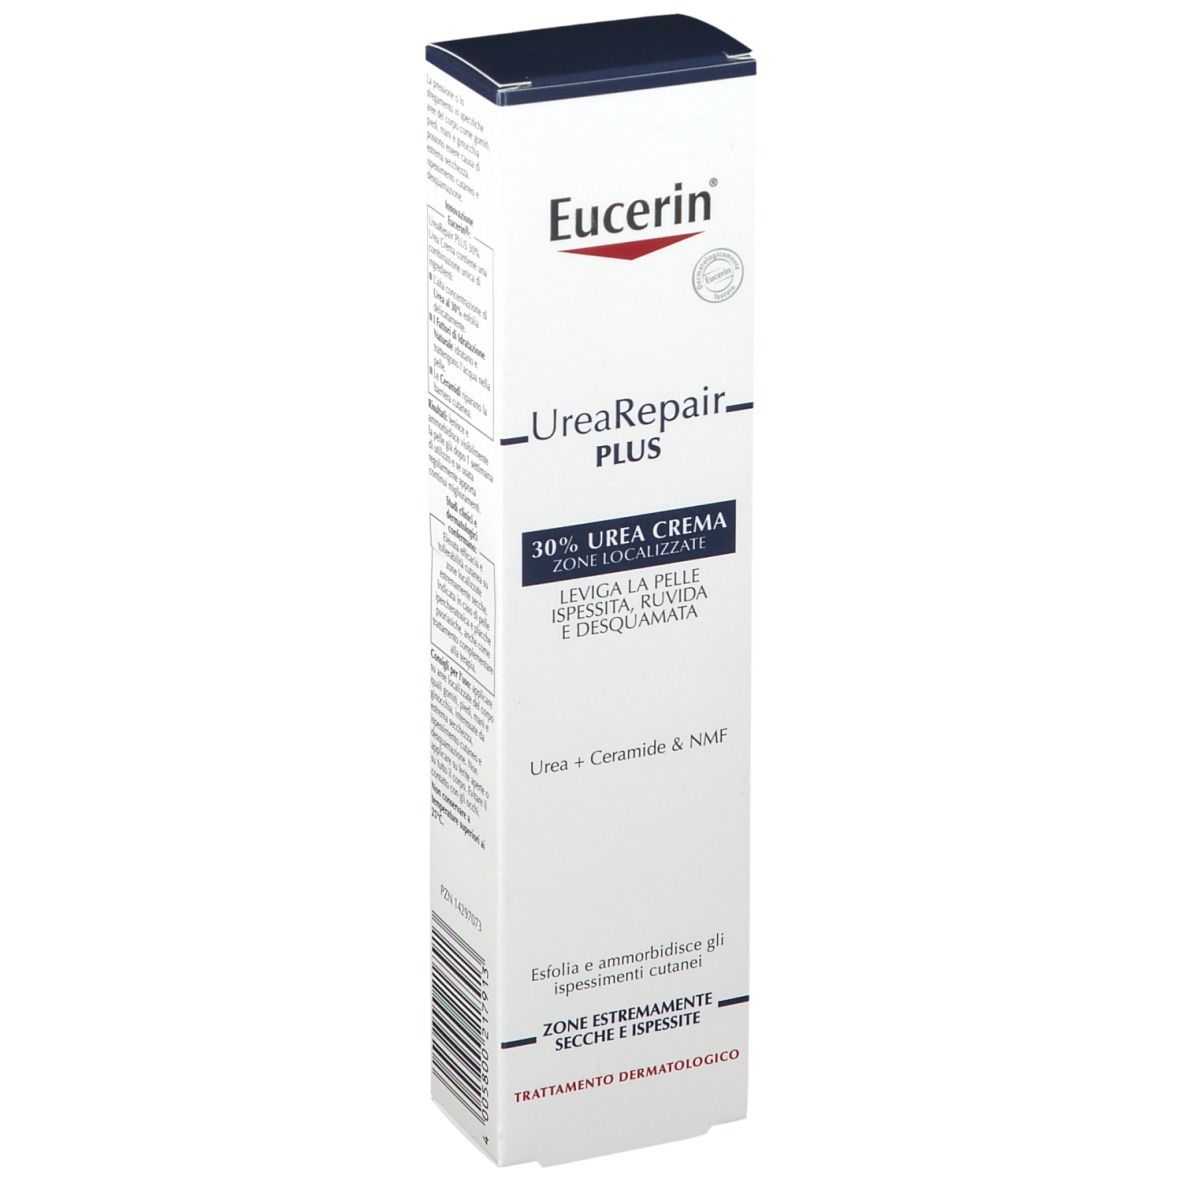 Image of Eucerin® UreaRepair PLUS Urea Creme Intensivpflege 30%